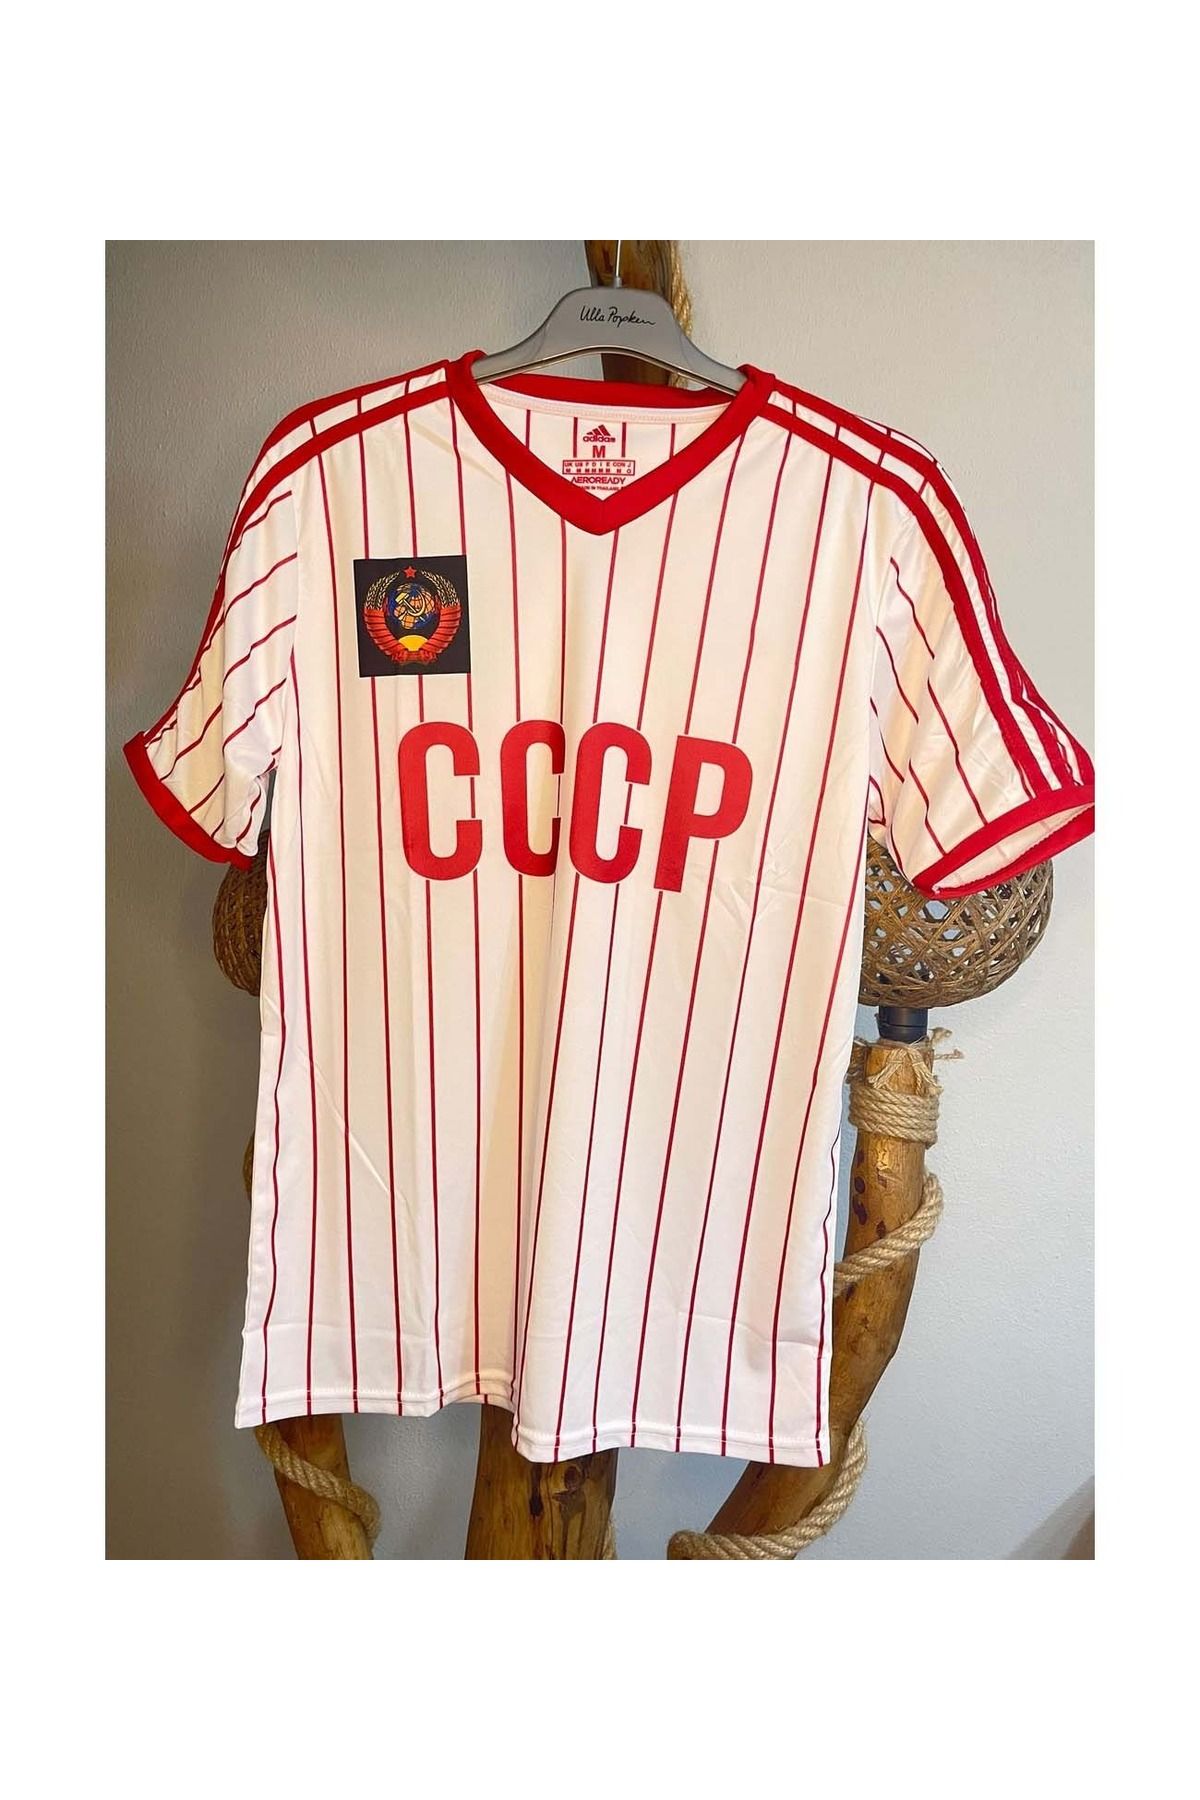 Forma Cccp Sovyetler Birliği Özel Tasarım Nostalji Cio Baba Forması